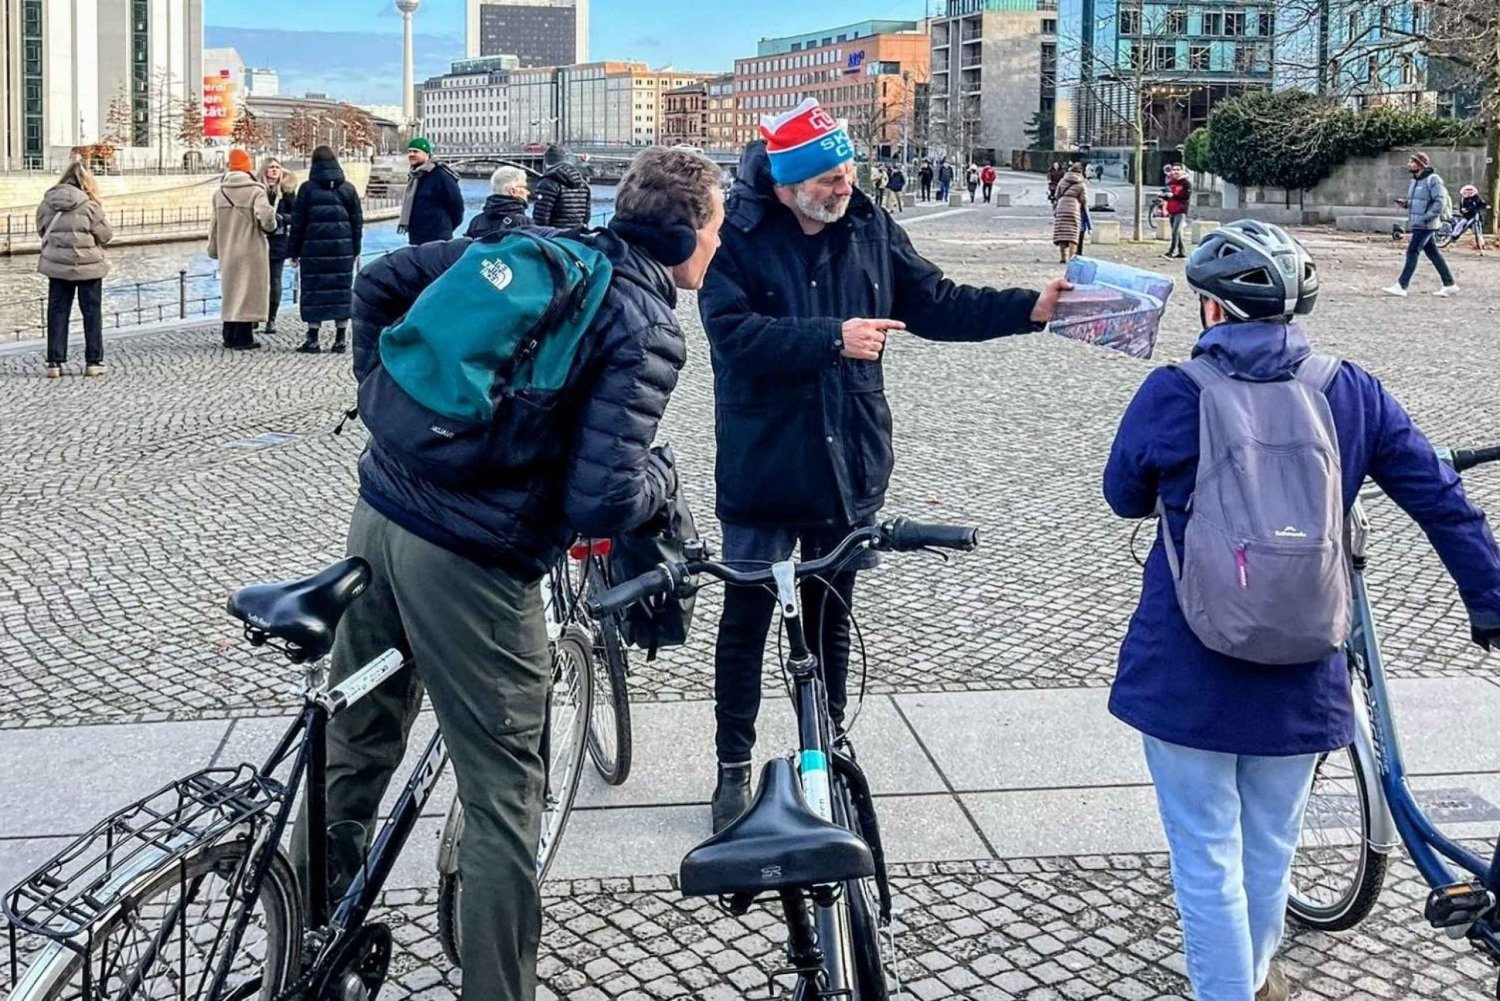 Berlin East West & Wall Tour: Najważniejsze zabytki indywidualnie na rowerze